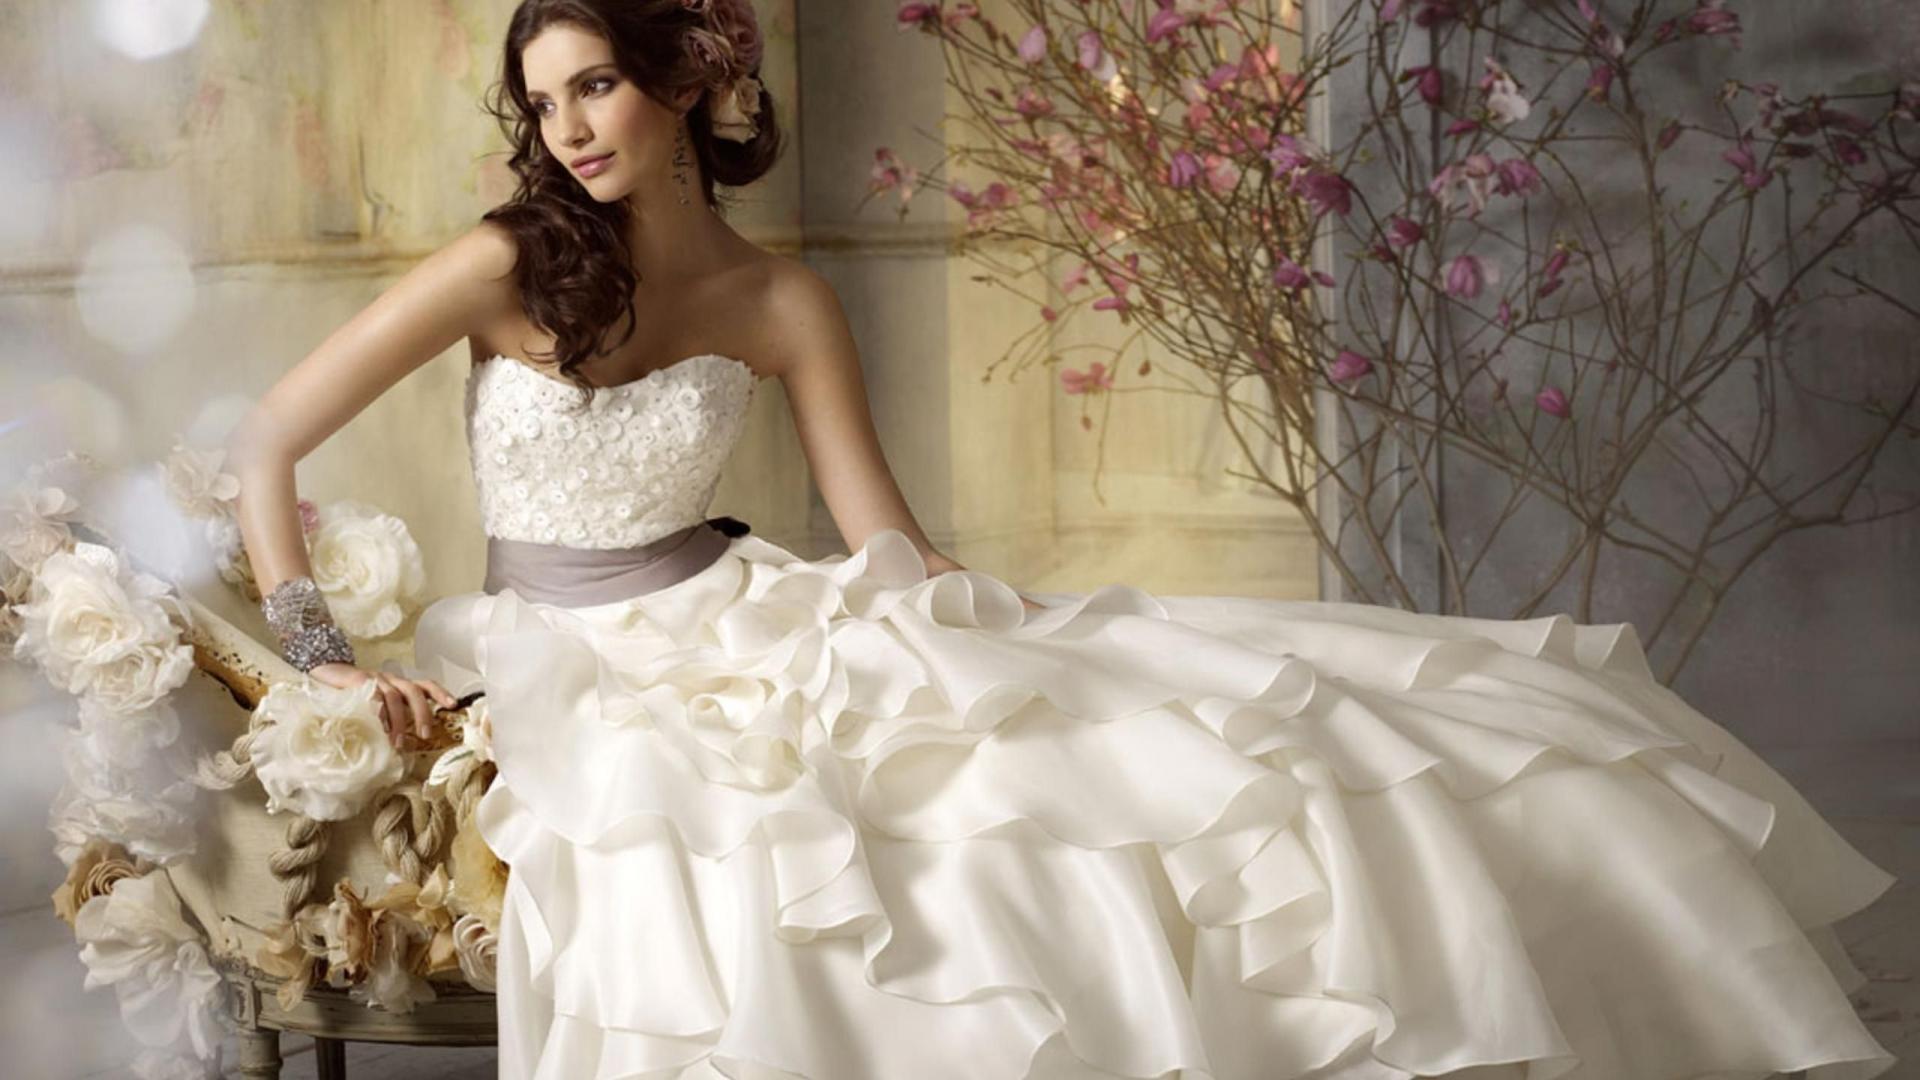 Download mobile wallpaper Flower, Brunette, Bride, Women, Wedding Dress, White Dress for free.